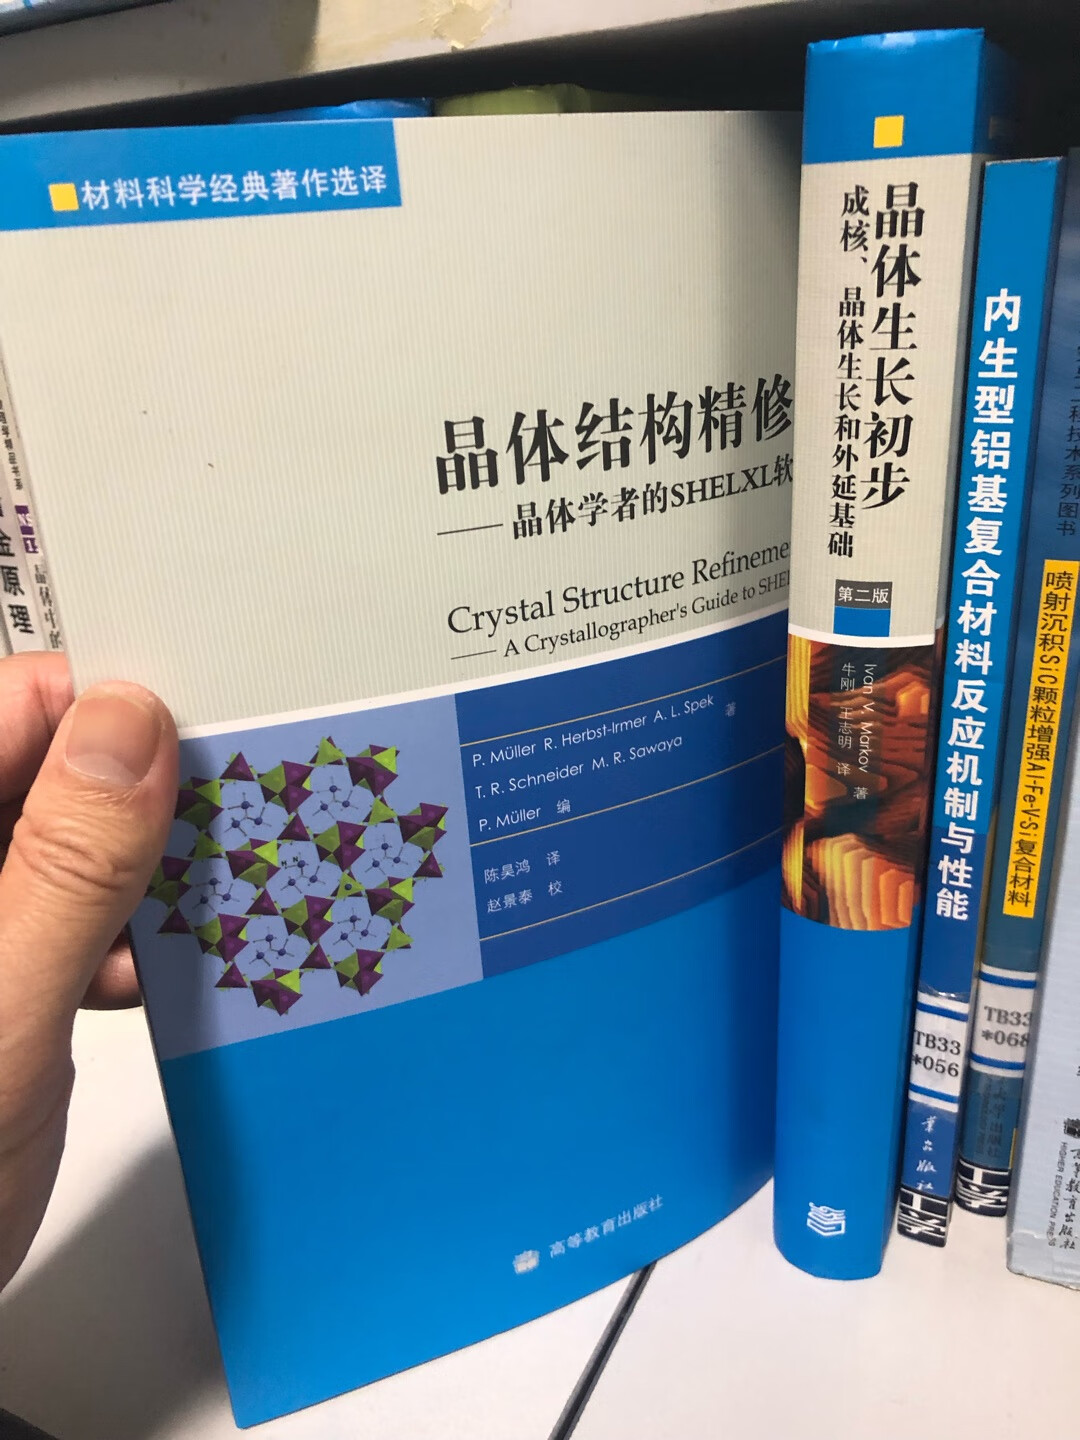 材料科学经典著作选译丛书太棒了，每本都值得购买和学习。